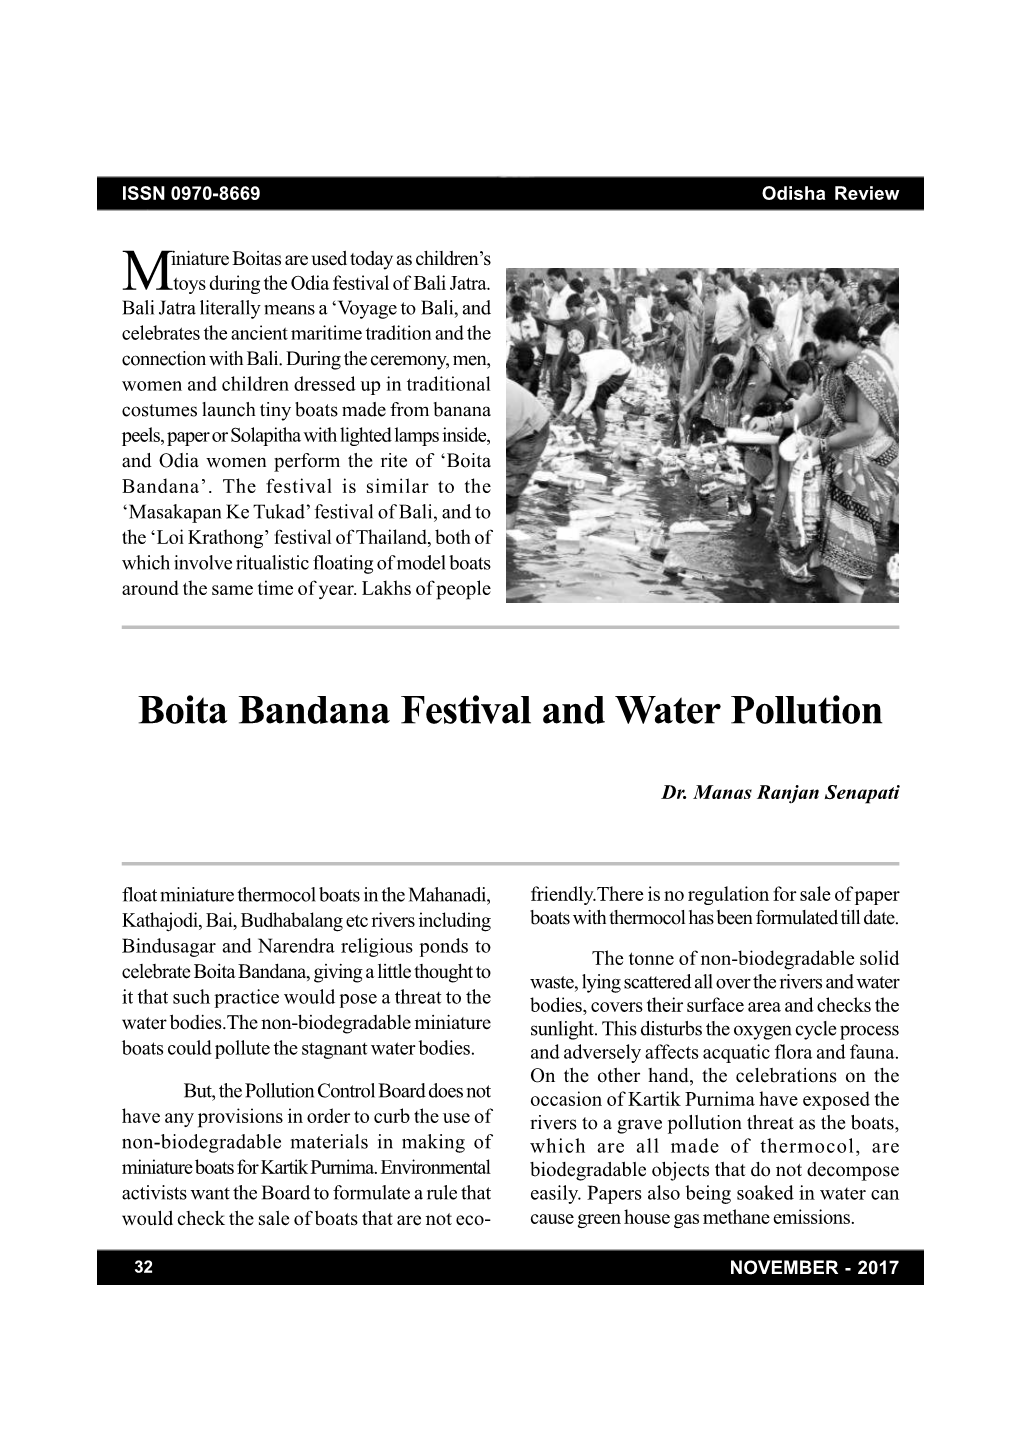 Boita Bandana Festival and Water Pollution